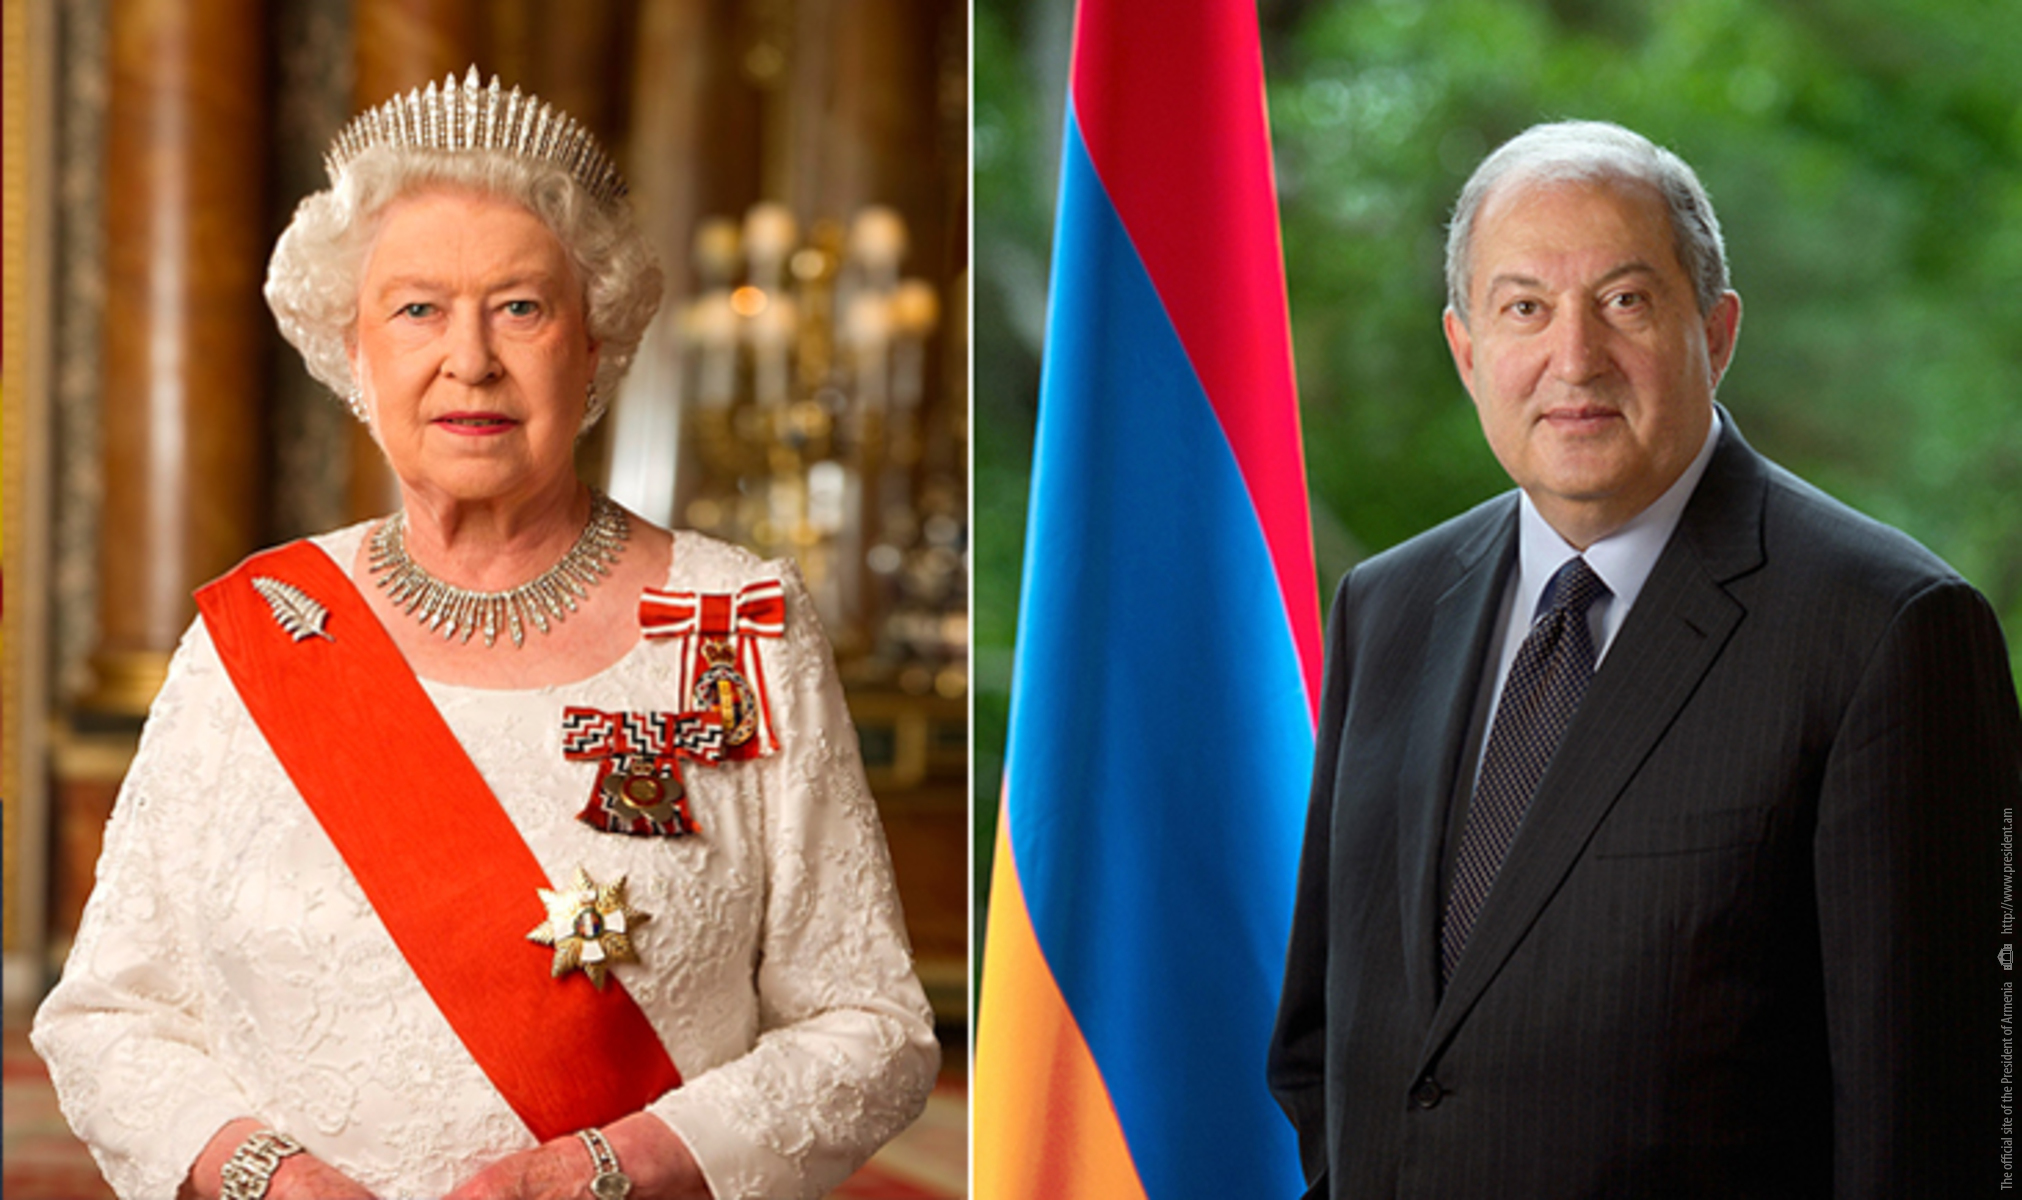 Անկախության տոնի առթիվ նախագահ Արմեն Սարգսյանին շնորհավորական ուղերձ է հղել Թագուհի Եղիսաբեթ Երկրորդը